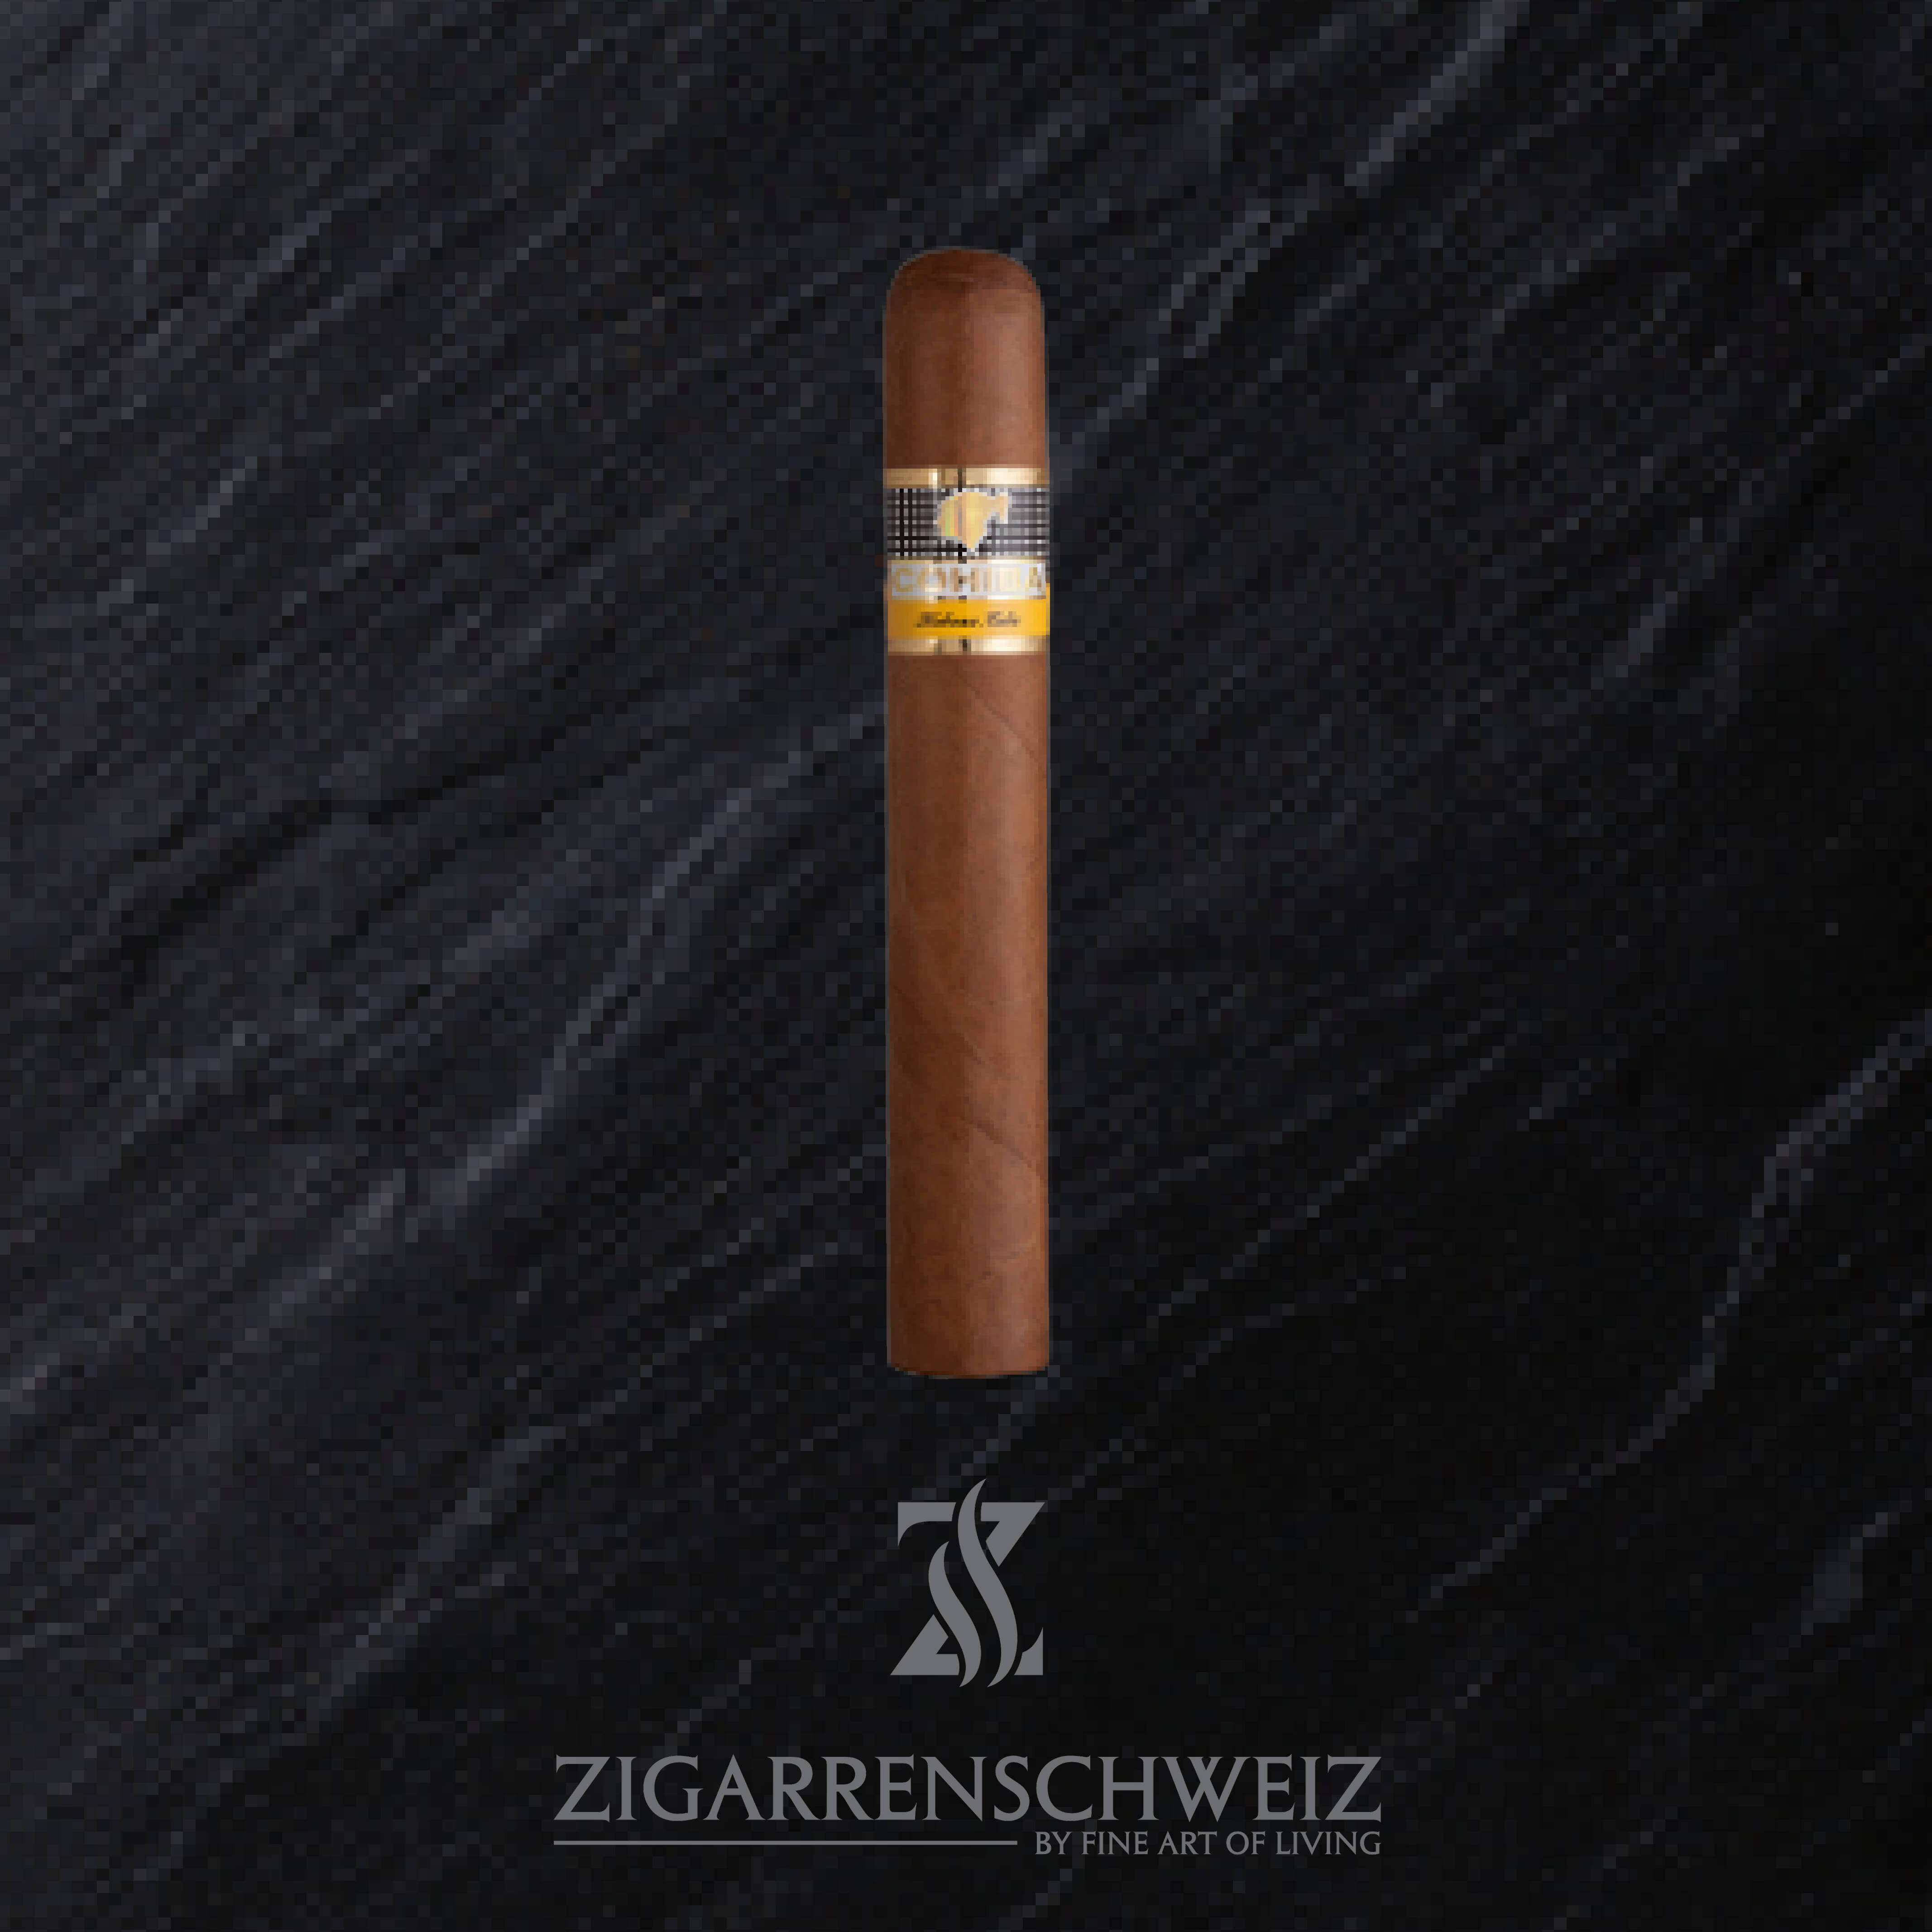 Cohiba Siglo IV (6) Zigarre aus der Linea 1492 von Cohiba